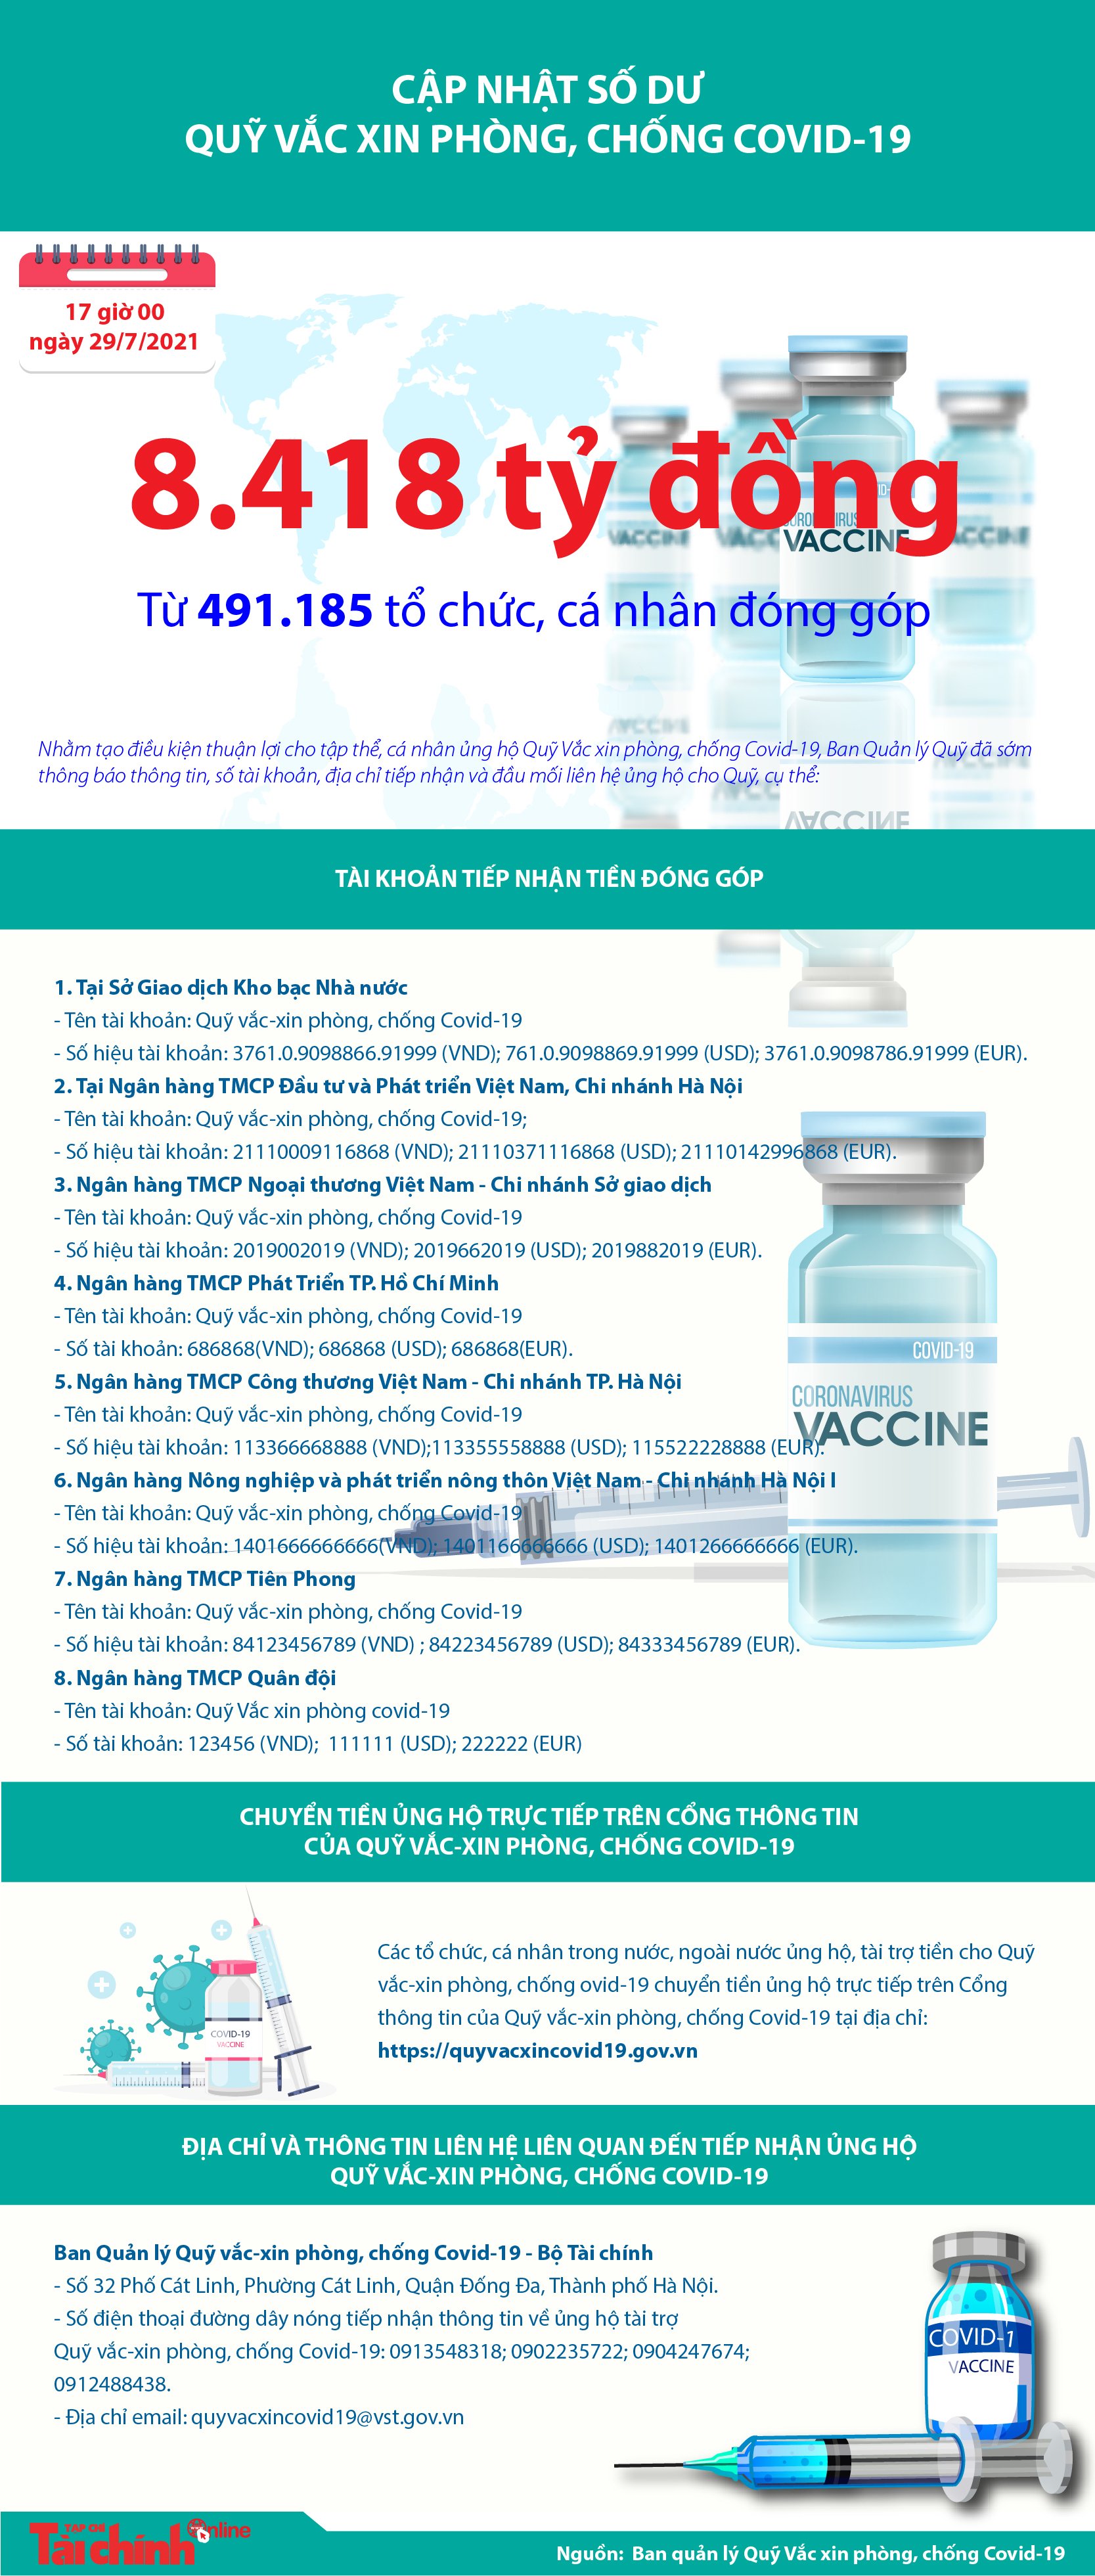 [Infographics] Quỹ Vắc xin phòng, chống Covid-19 đã tiếp nhận ủng hộ 8.418 tỷ đồng - Ảnh 1